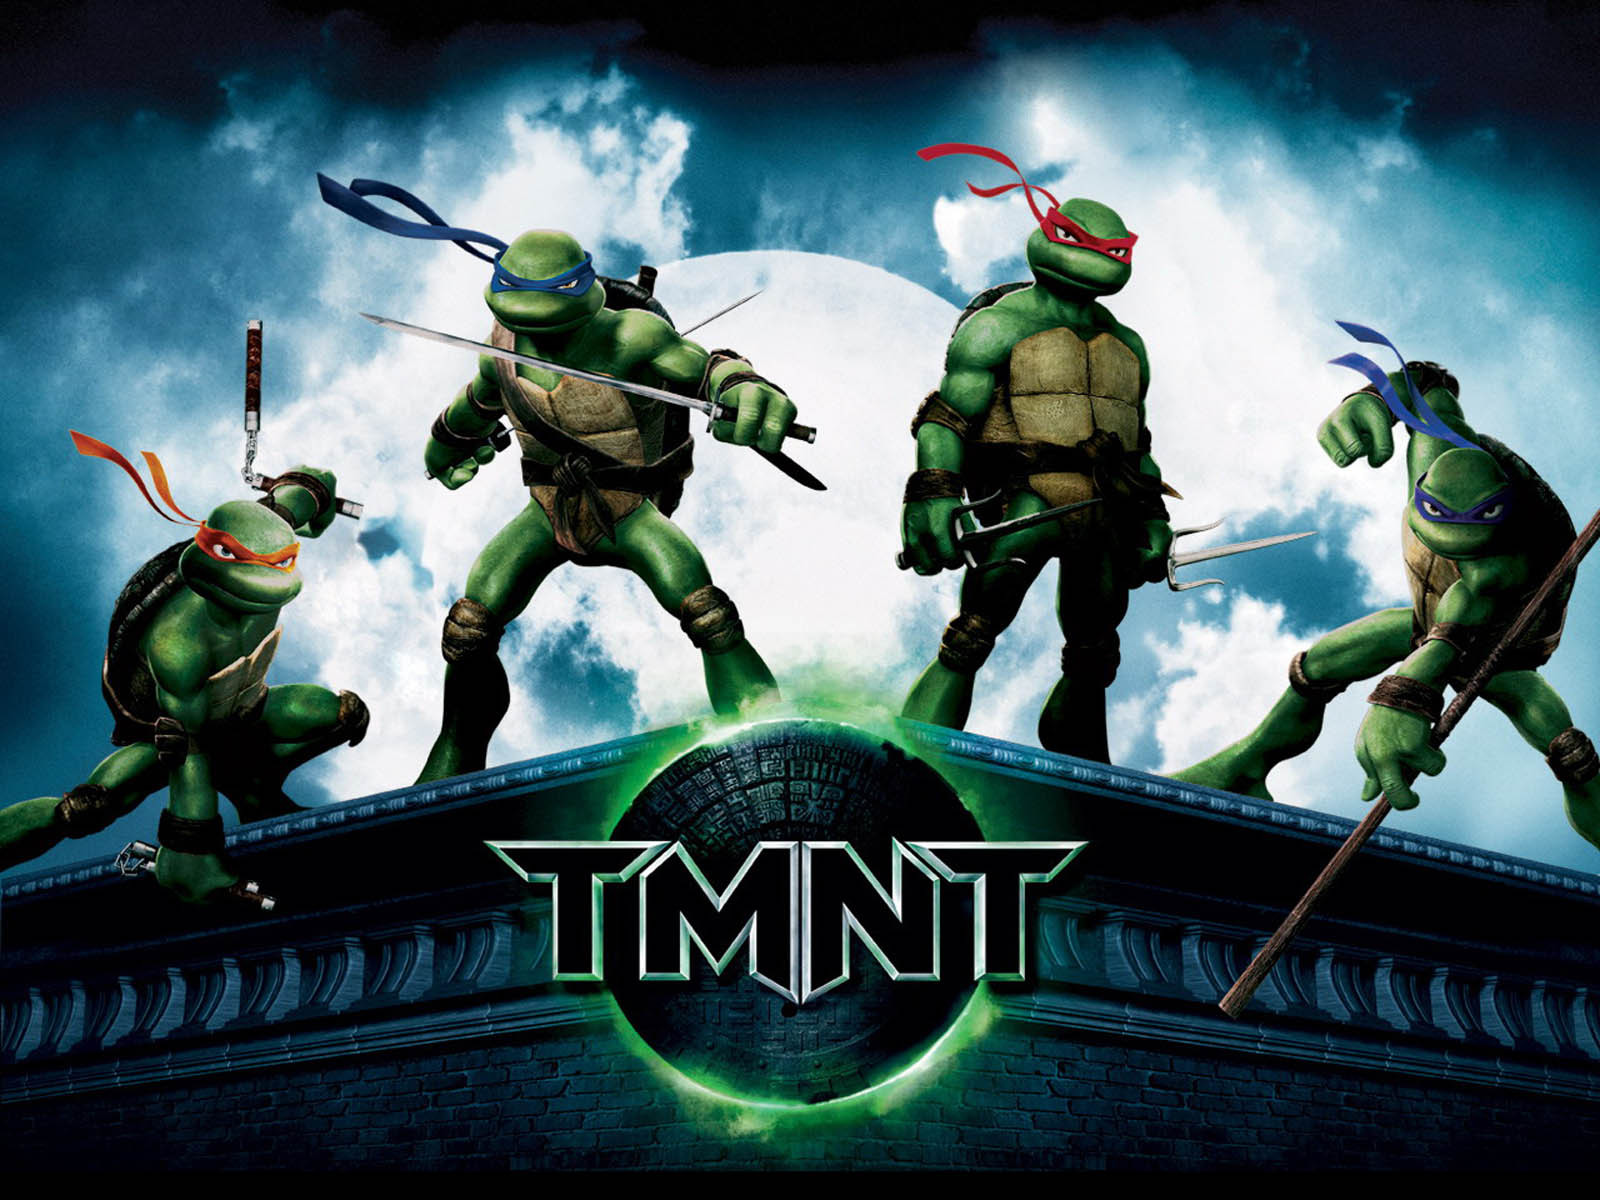 The Teenage Mutant Ninja Turtles Wallpaper And Image